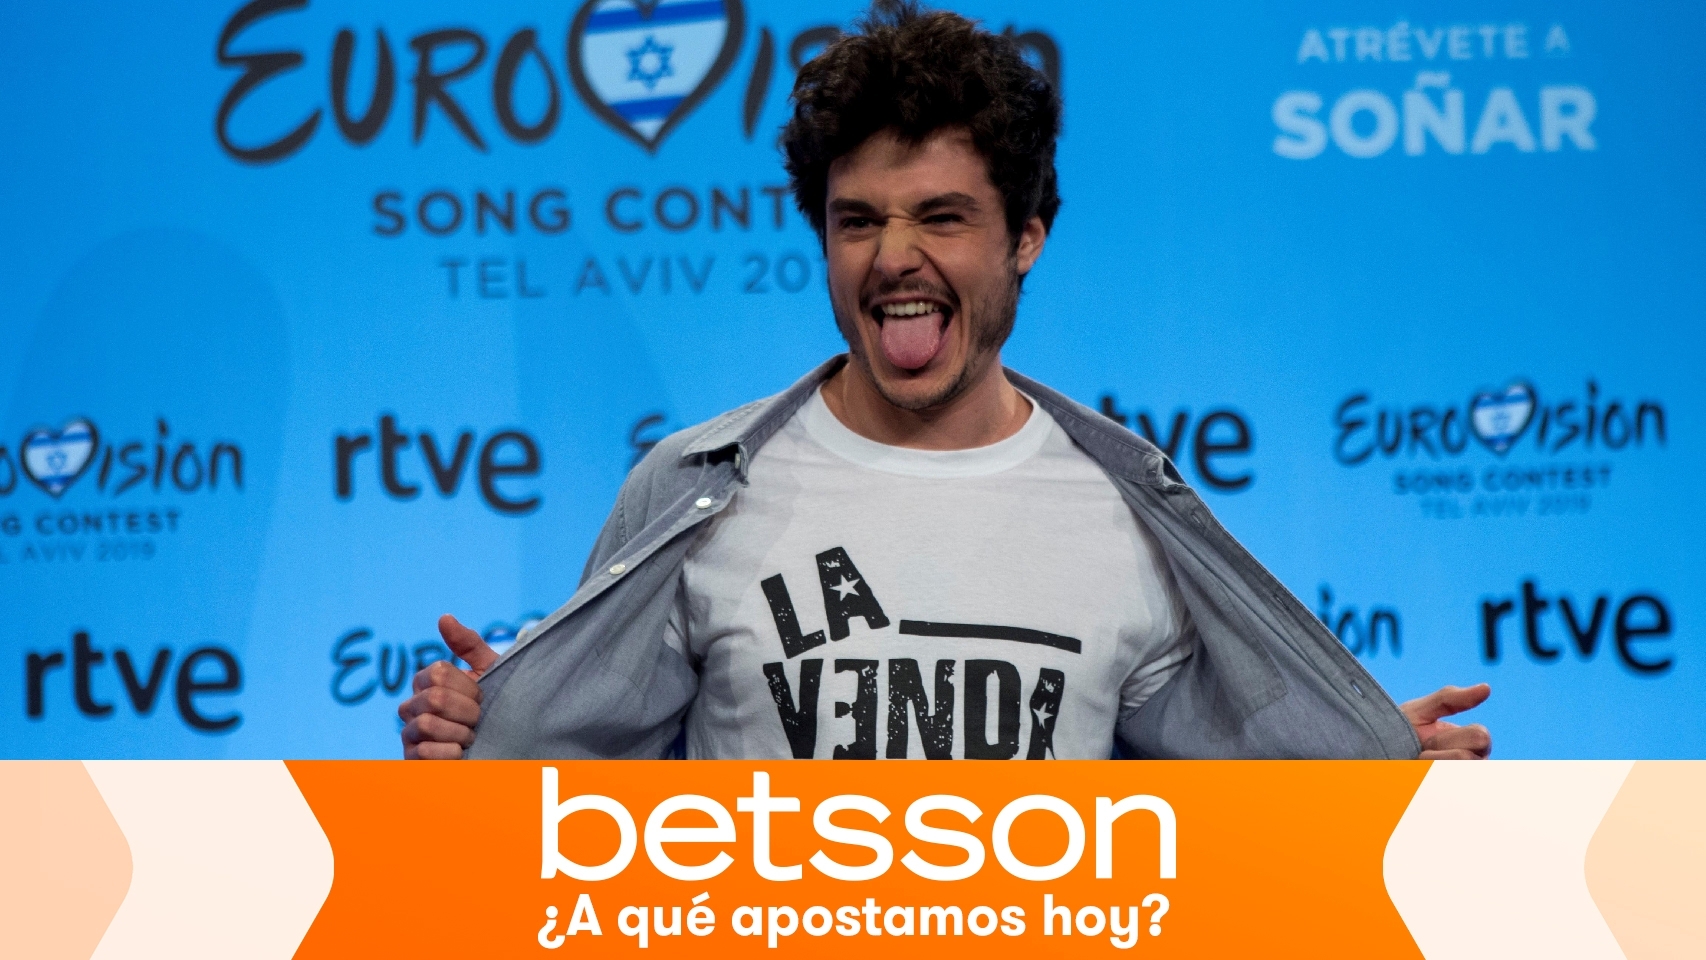 El cantante Miki representará a España en Eurovisión 2019